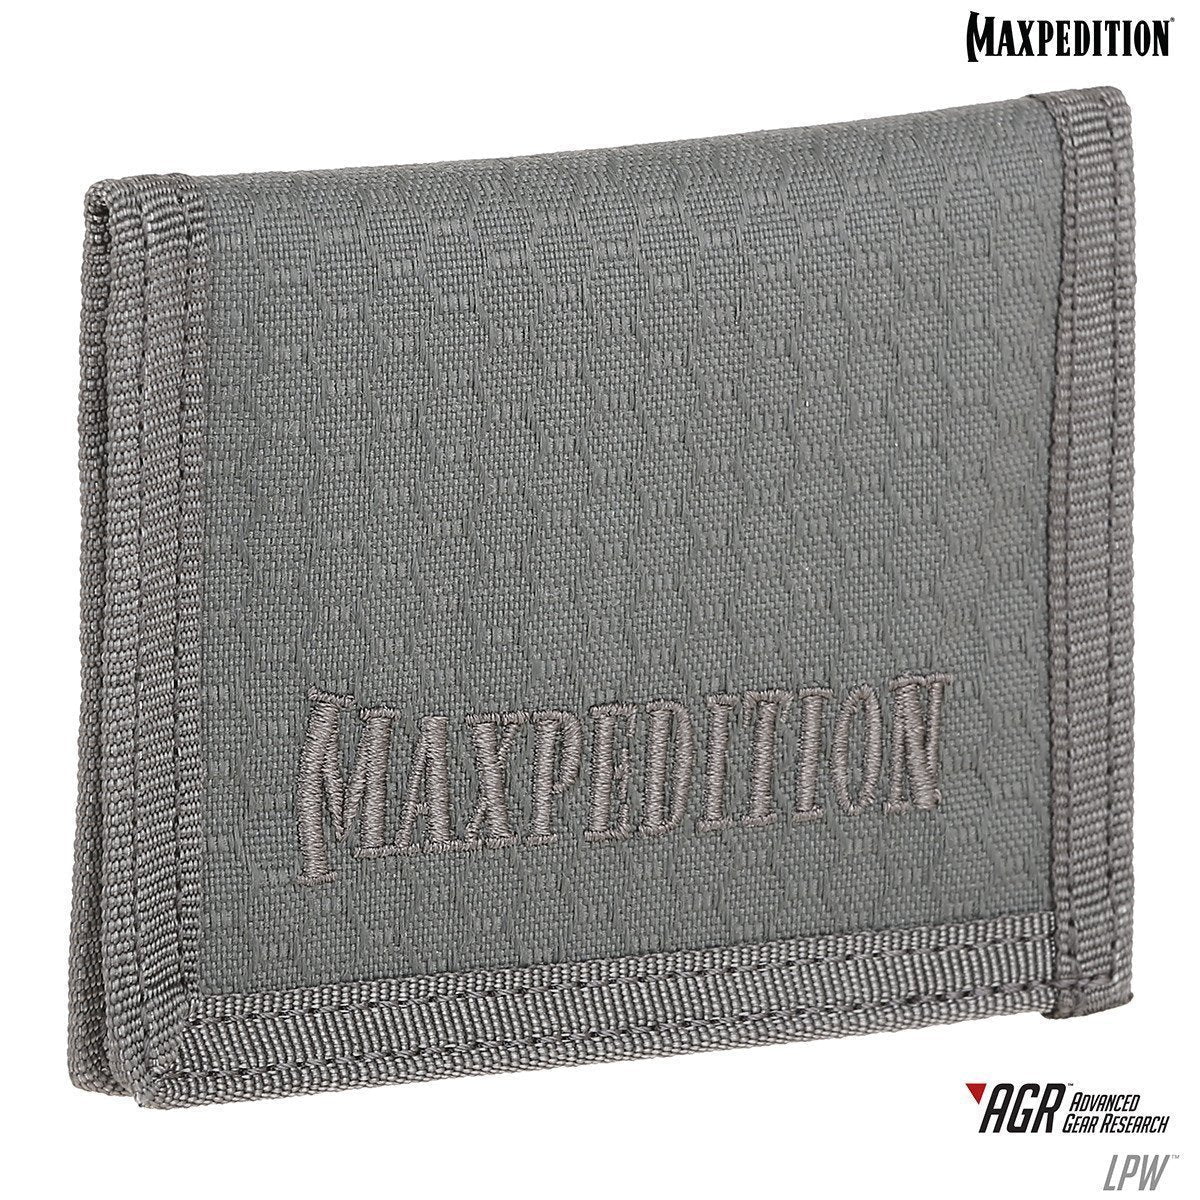 Maxpedition LPW Low Profile Wallet Tactical Distributors Ltd New Zealand